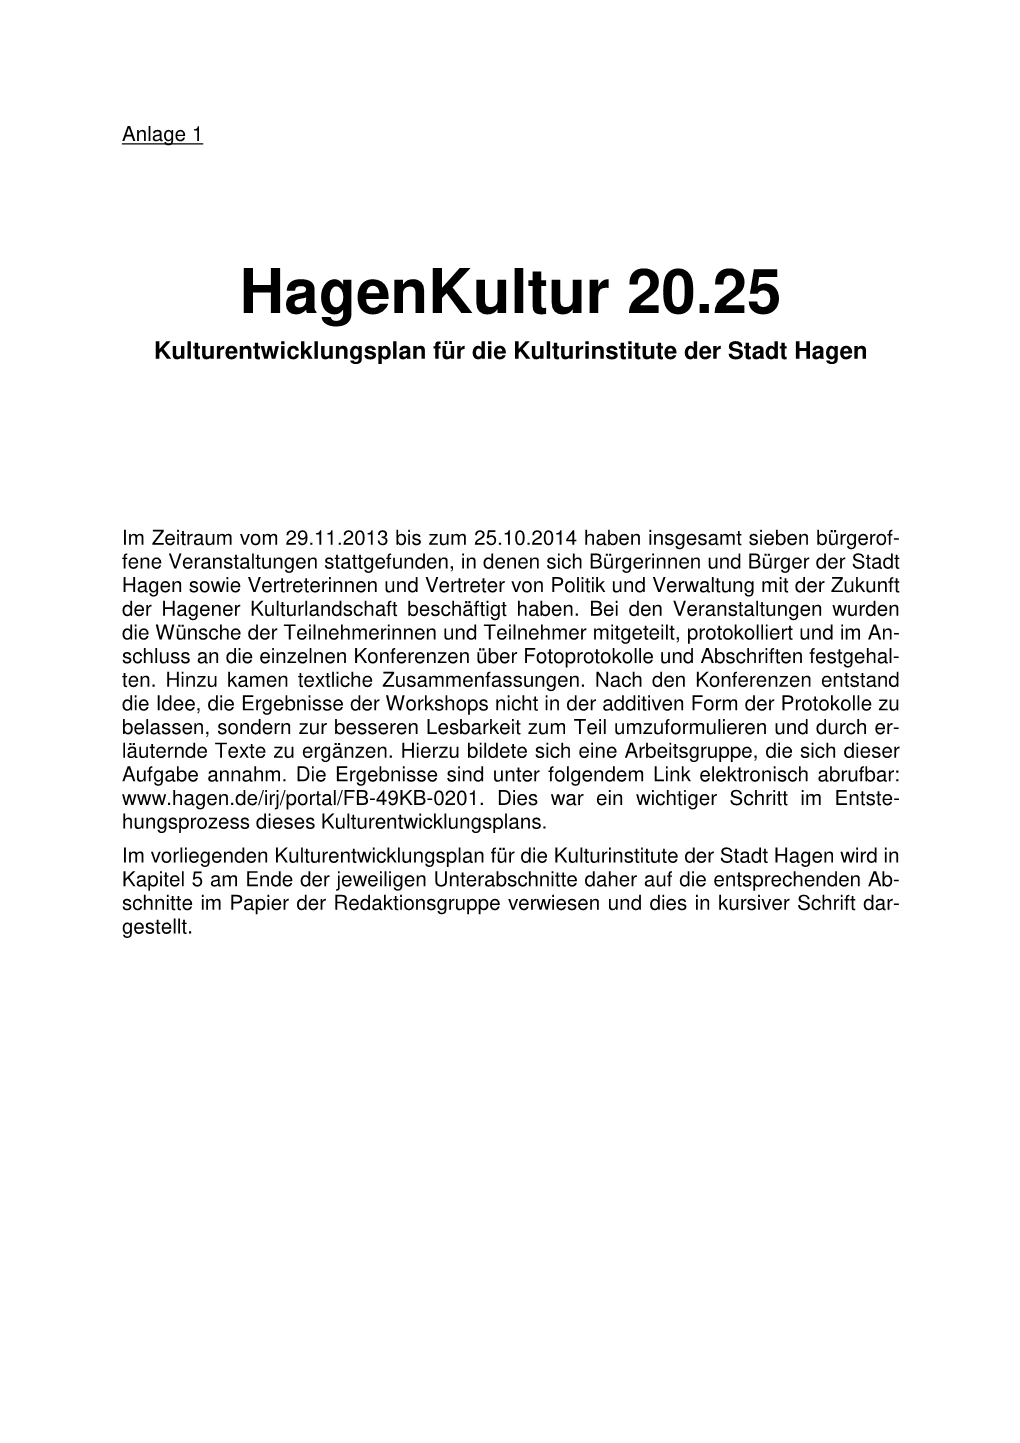 Hagenkultur 20.25 Kulturentwicklungsplan Für Die Kulturinstitute Der Stadt Hagen